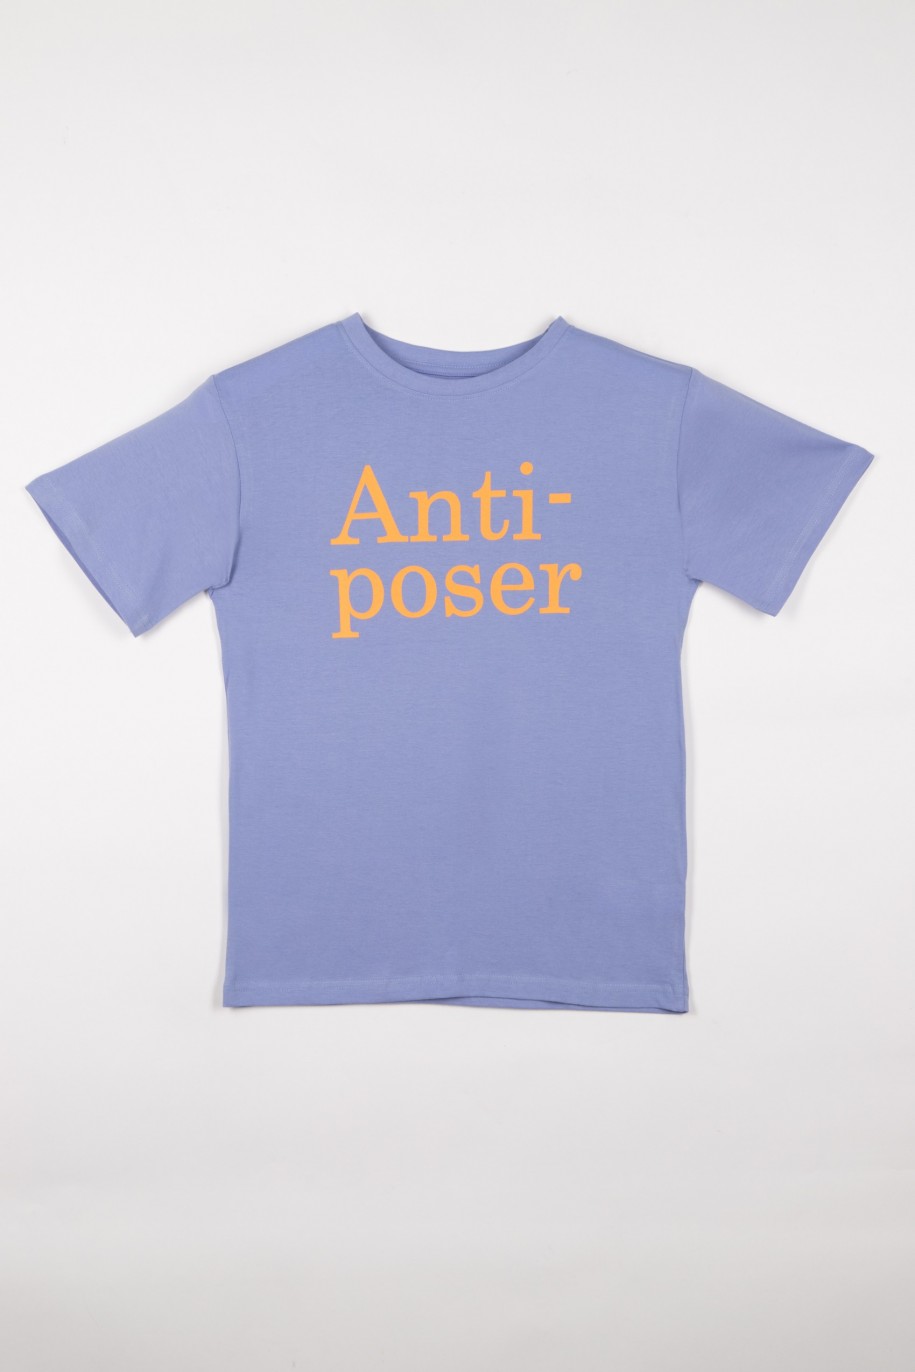 Fioletowy tshirt dla chłopaka z napisem ANTI-POSER - 28250